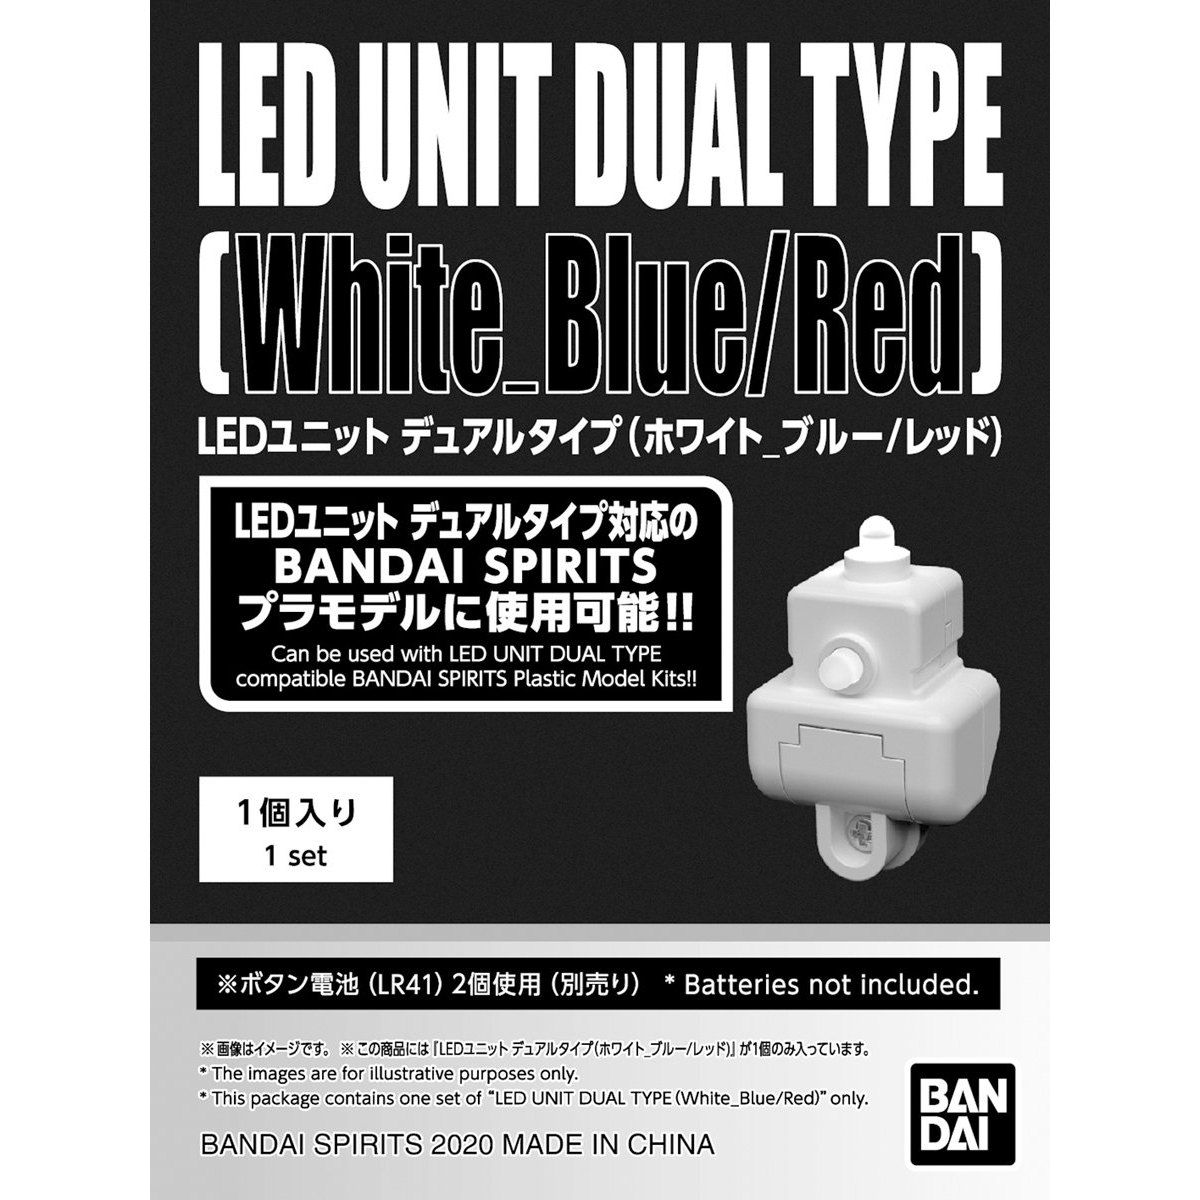 LEDユニット デュアルタイプ(ホワイト_ブルー/レッド) 03